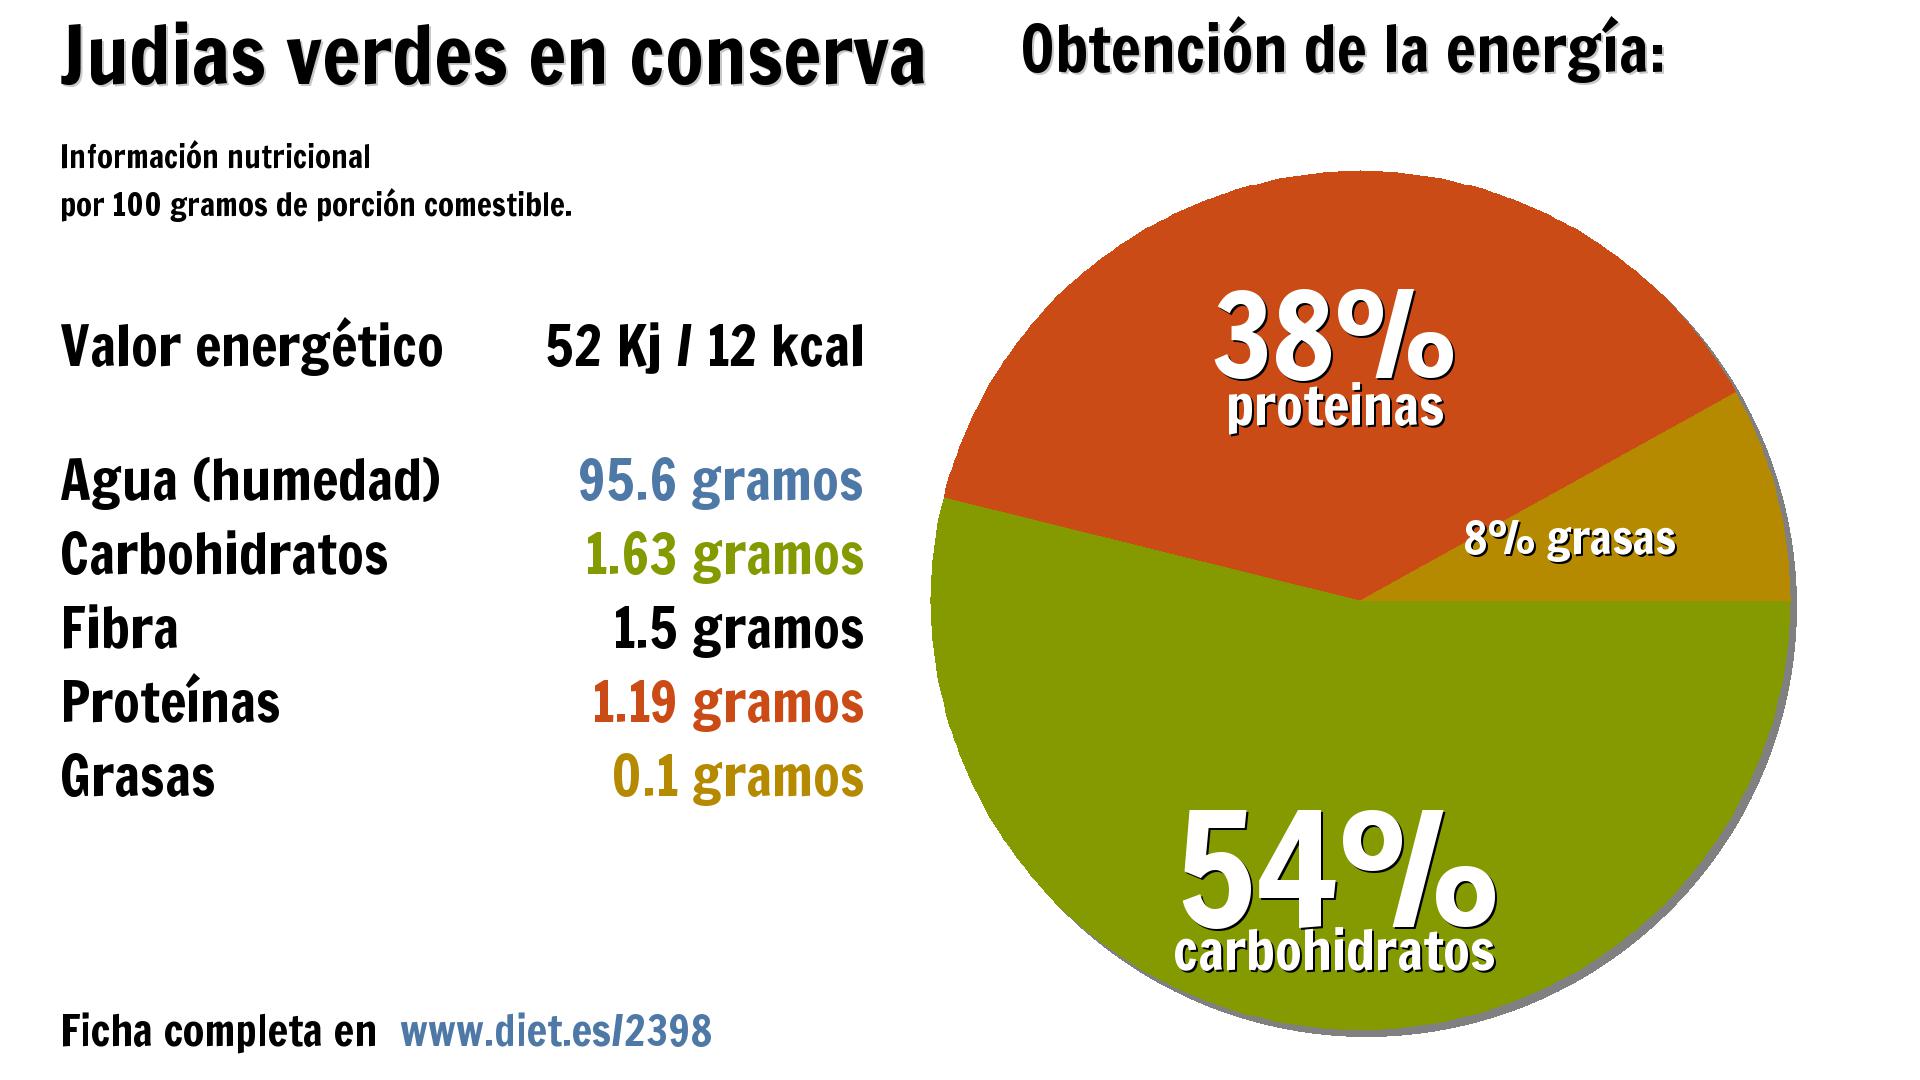 Judias verdes en conserva: agua 96 g., energía 52 Kj, carbohidratos 2 g., fibra 2 g. y proteínas 1 g.